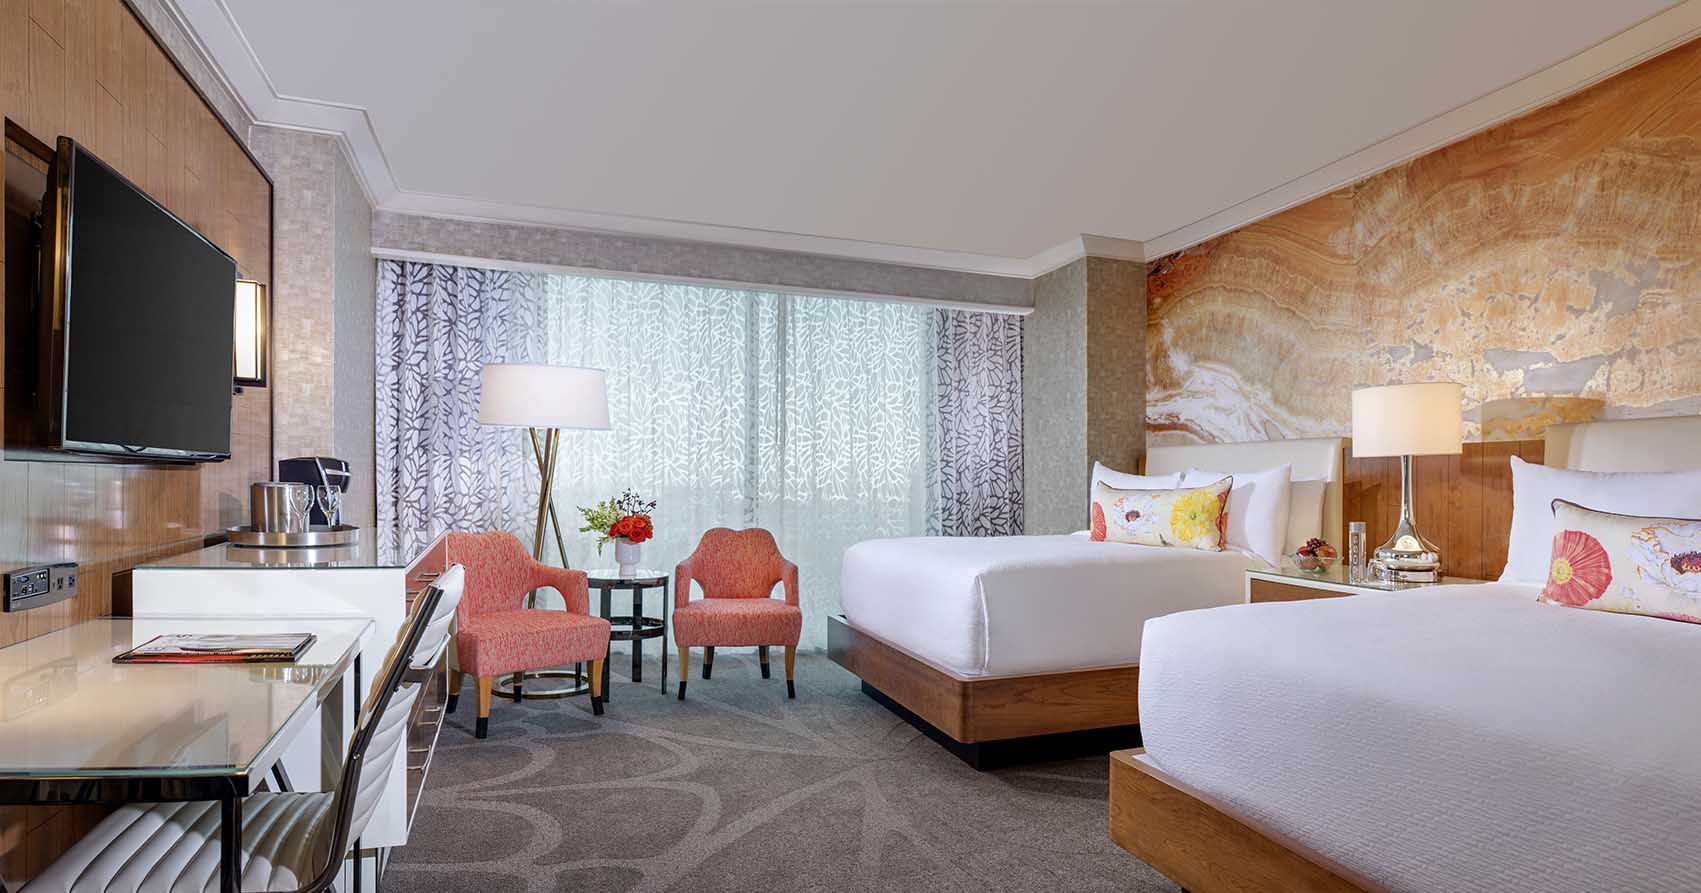 Mandalay Bay Room Las Vegas hotels